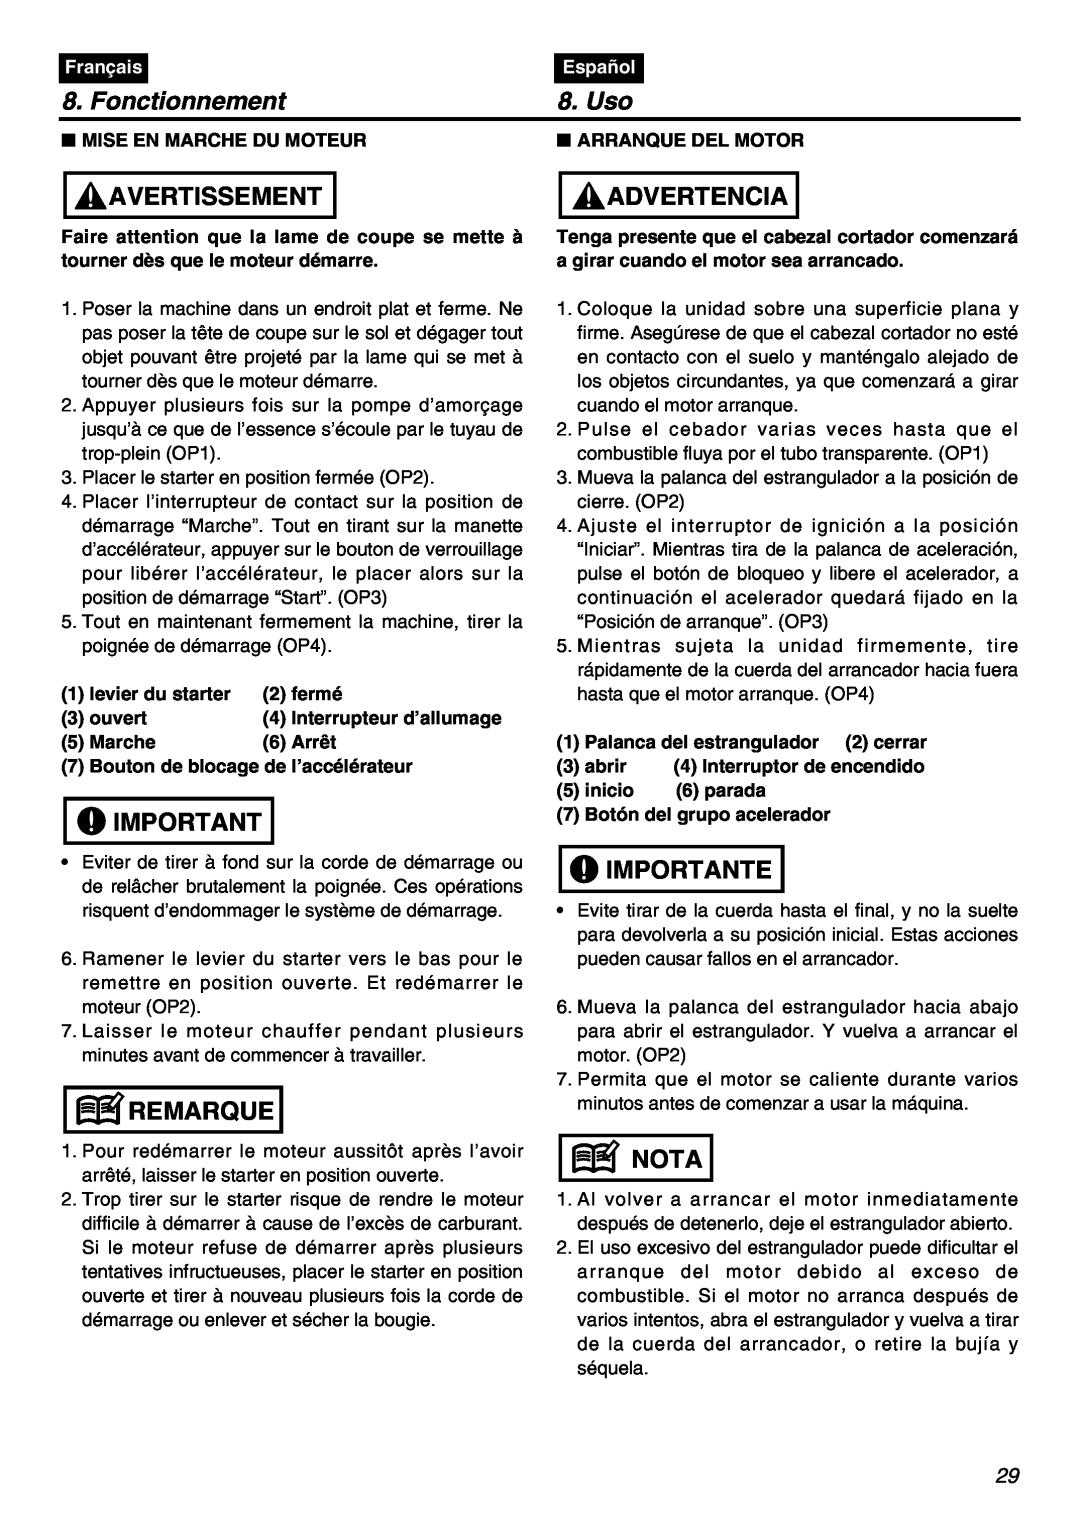 RedMax SRTZ2401F manual Fonctionnement, Uso, Avertissement, Advertencia, Remarque, Importante, Nota, Français, Español 